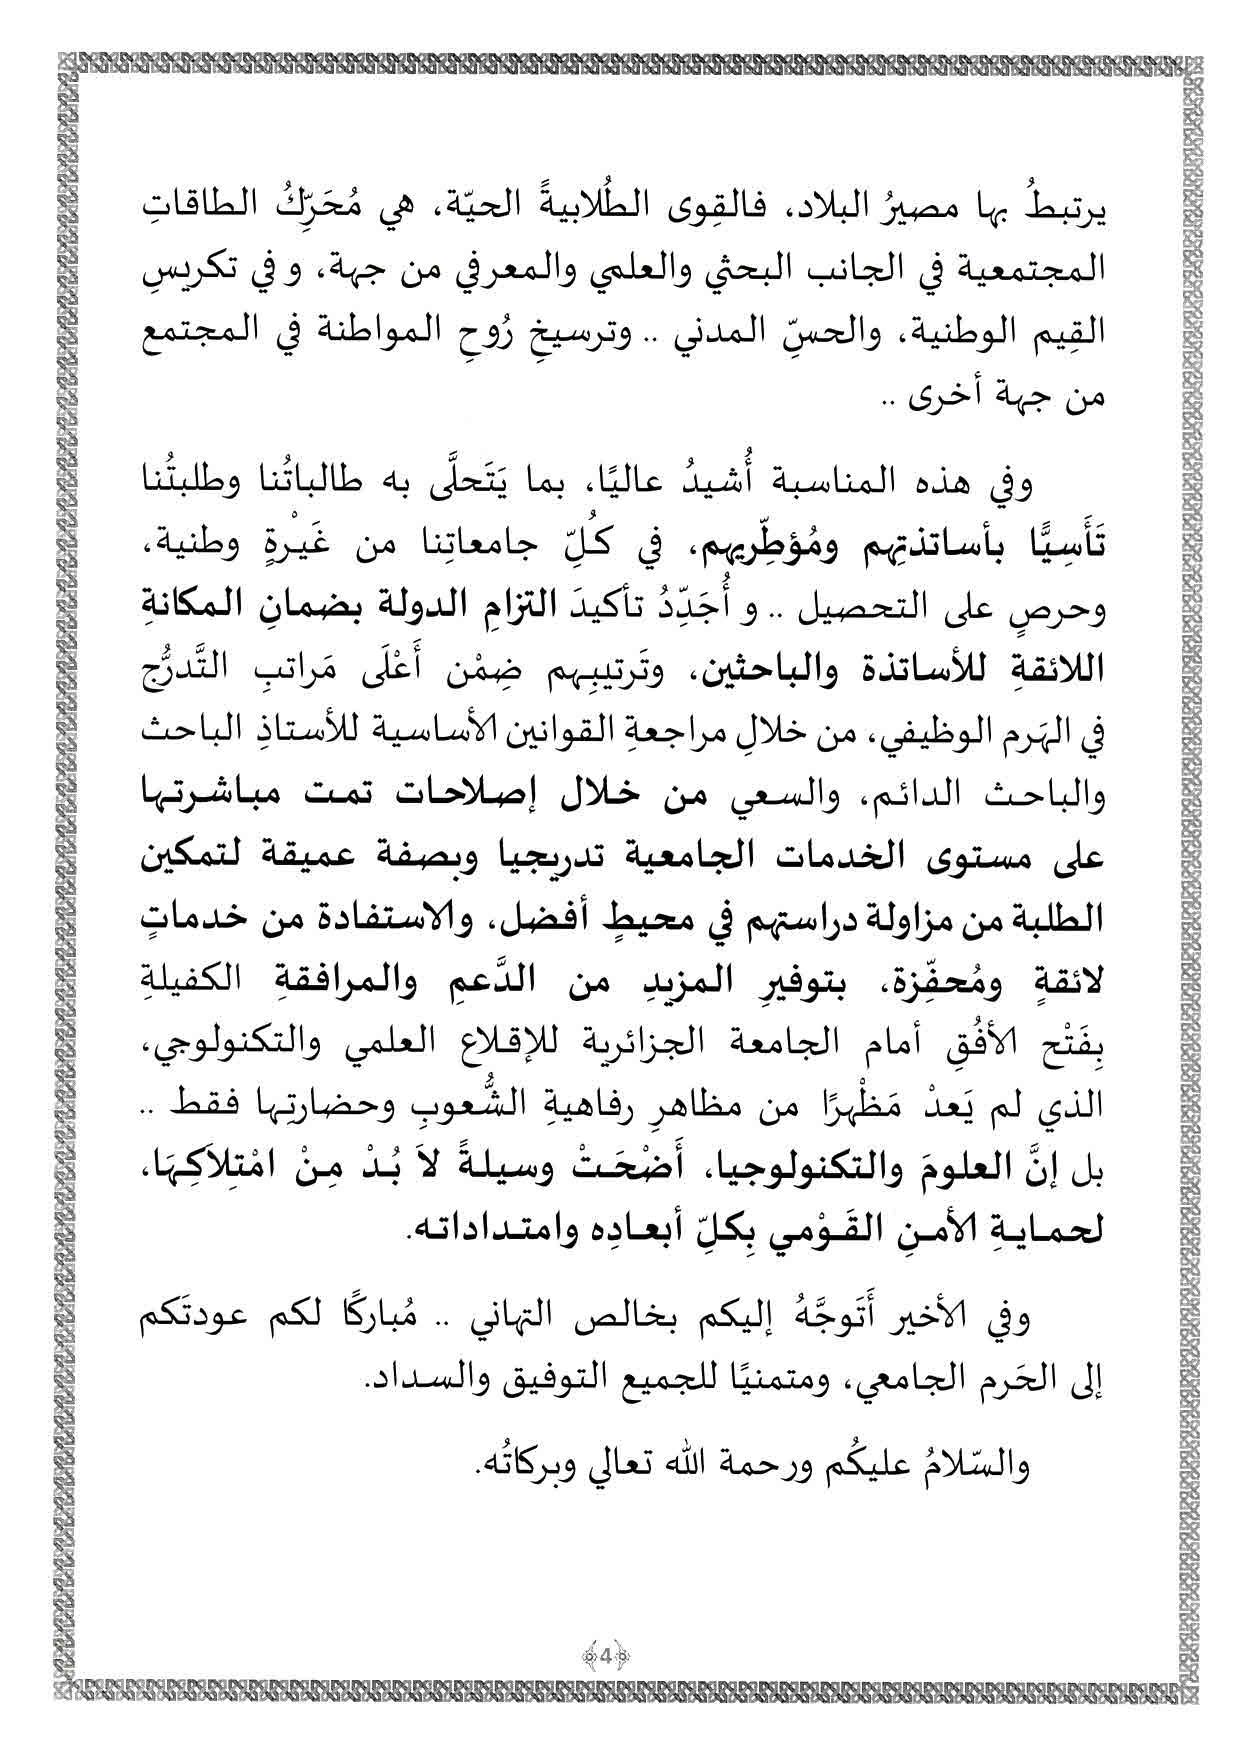 رسالة رئيس الجمهورية السيد عبد المجيد تبون بمناسبة افتتاح السنة الجامعية 2021 page 006 1